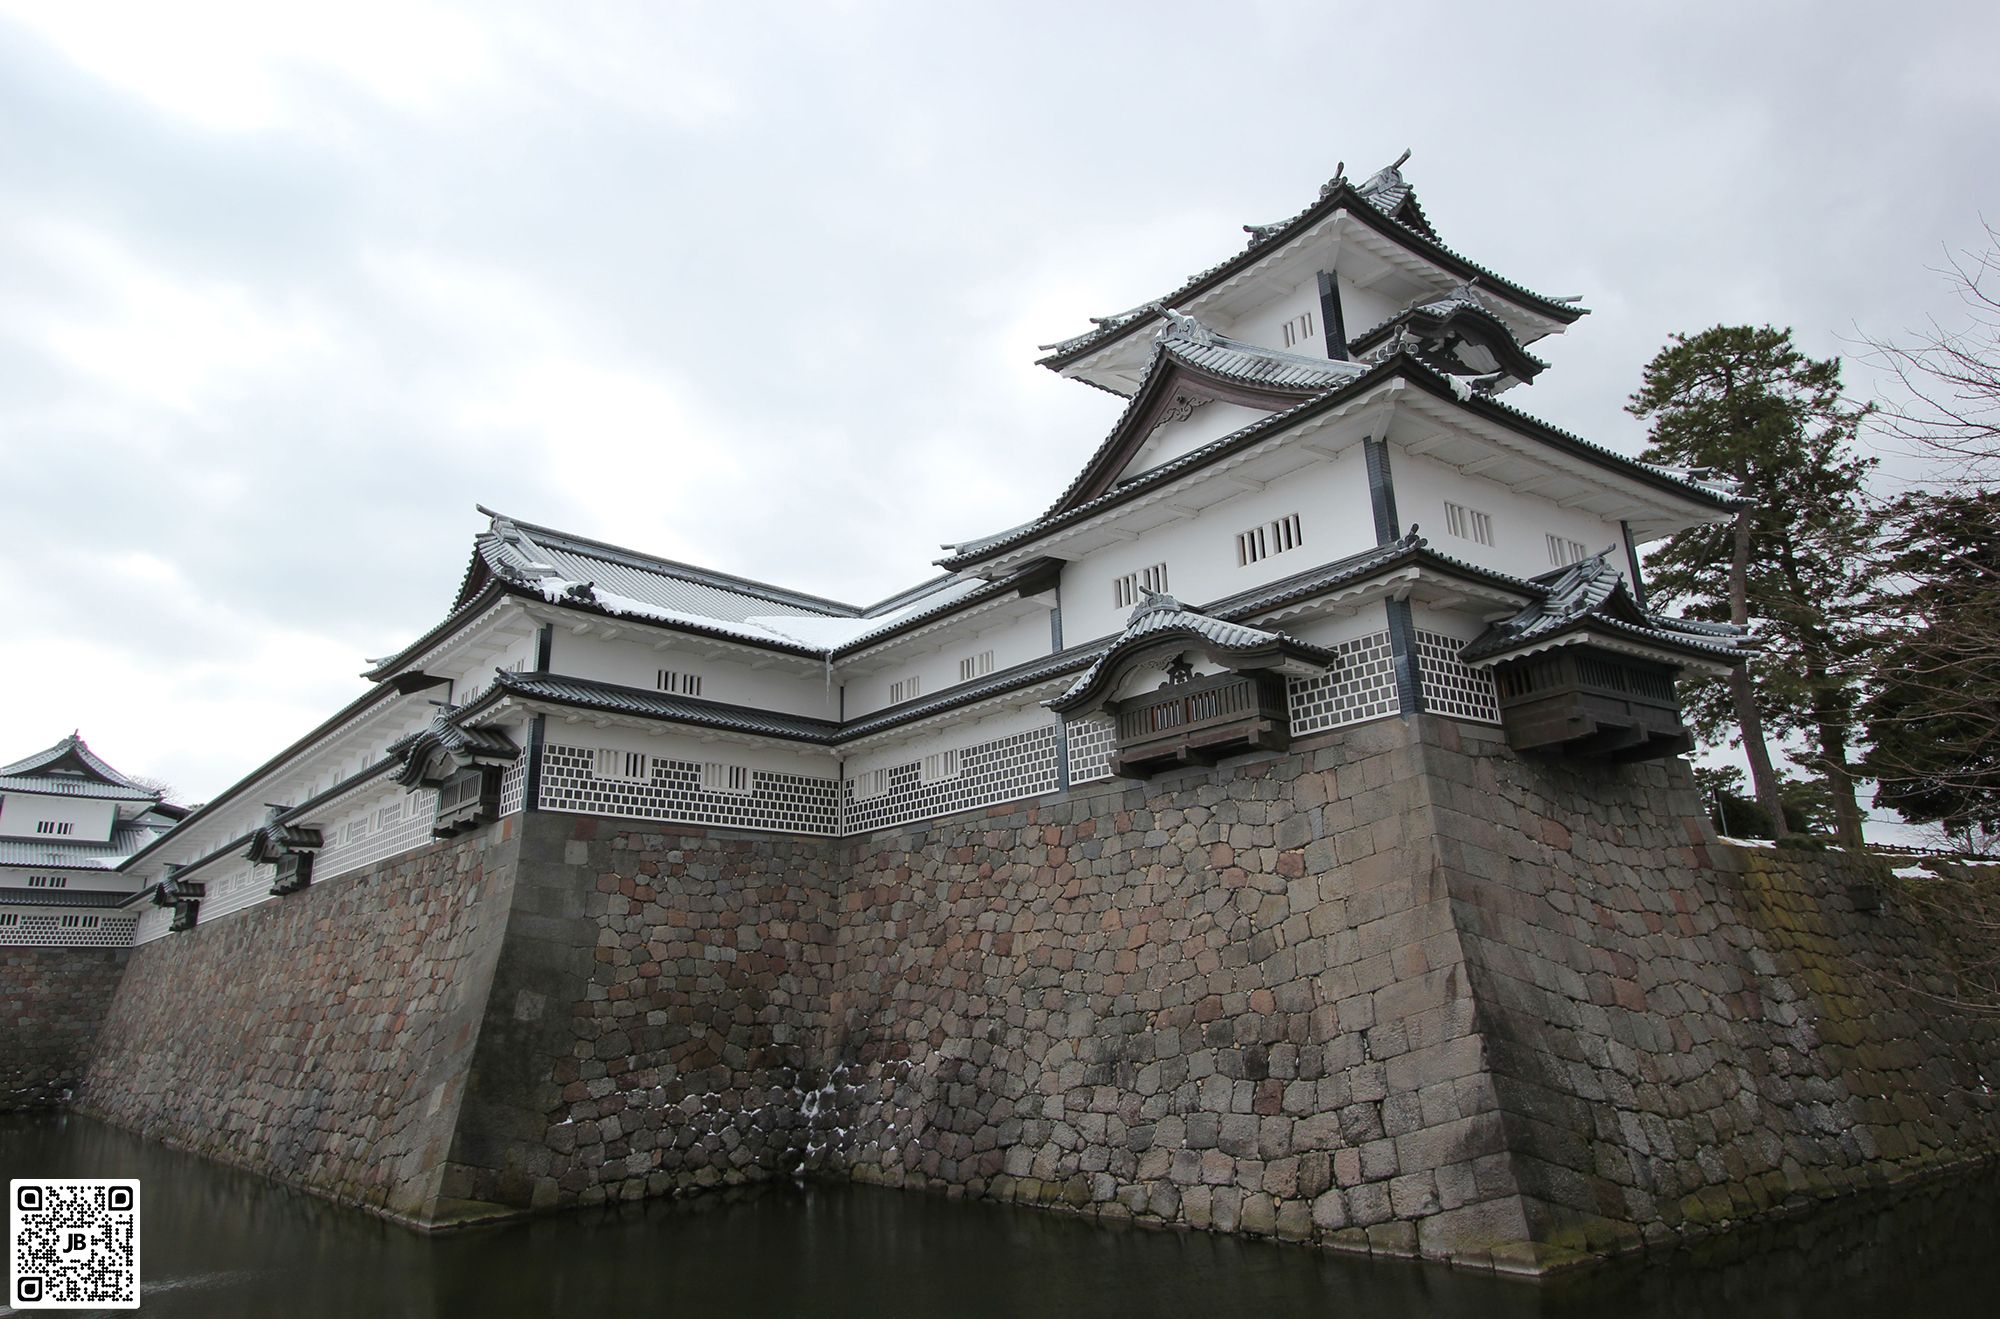 japon chateau de kanazawa fevrier 2014 haute resolution